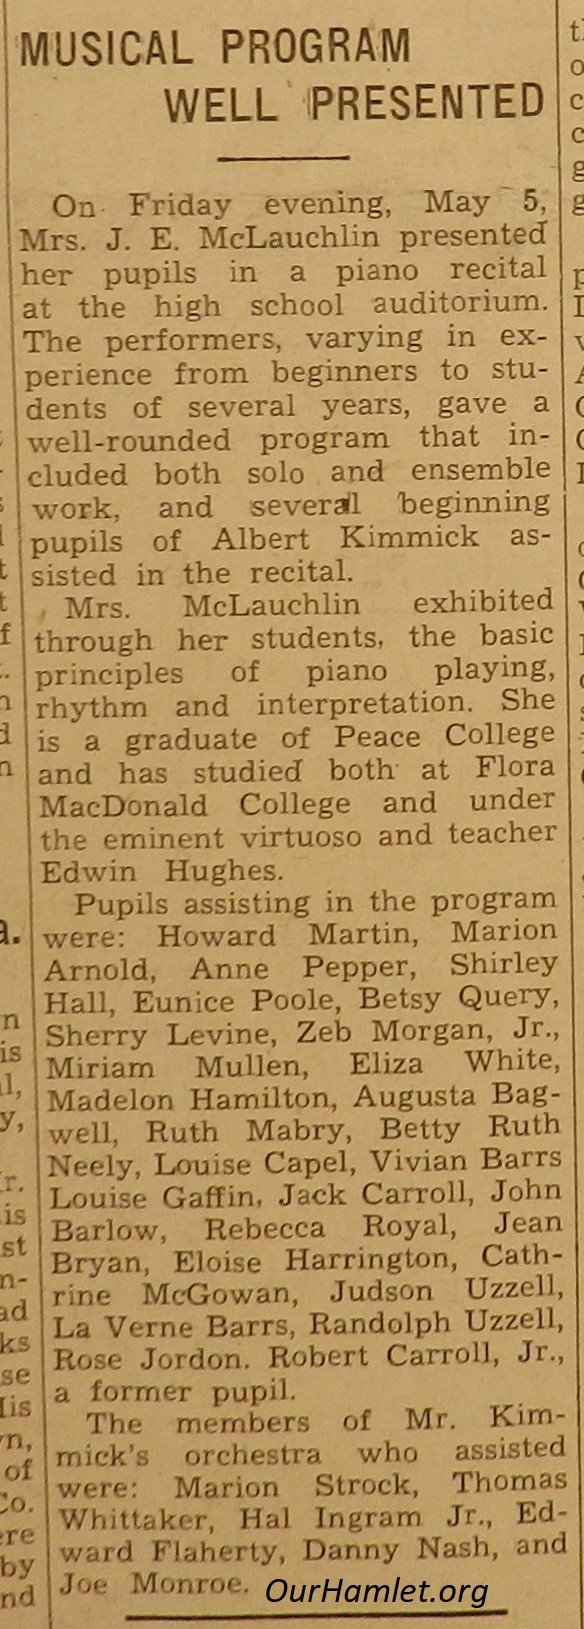 1939 Music Program OH.jpg